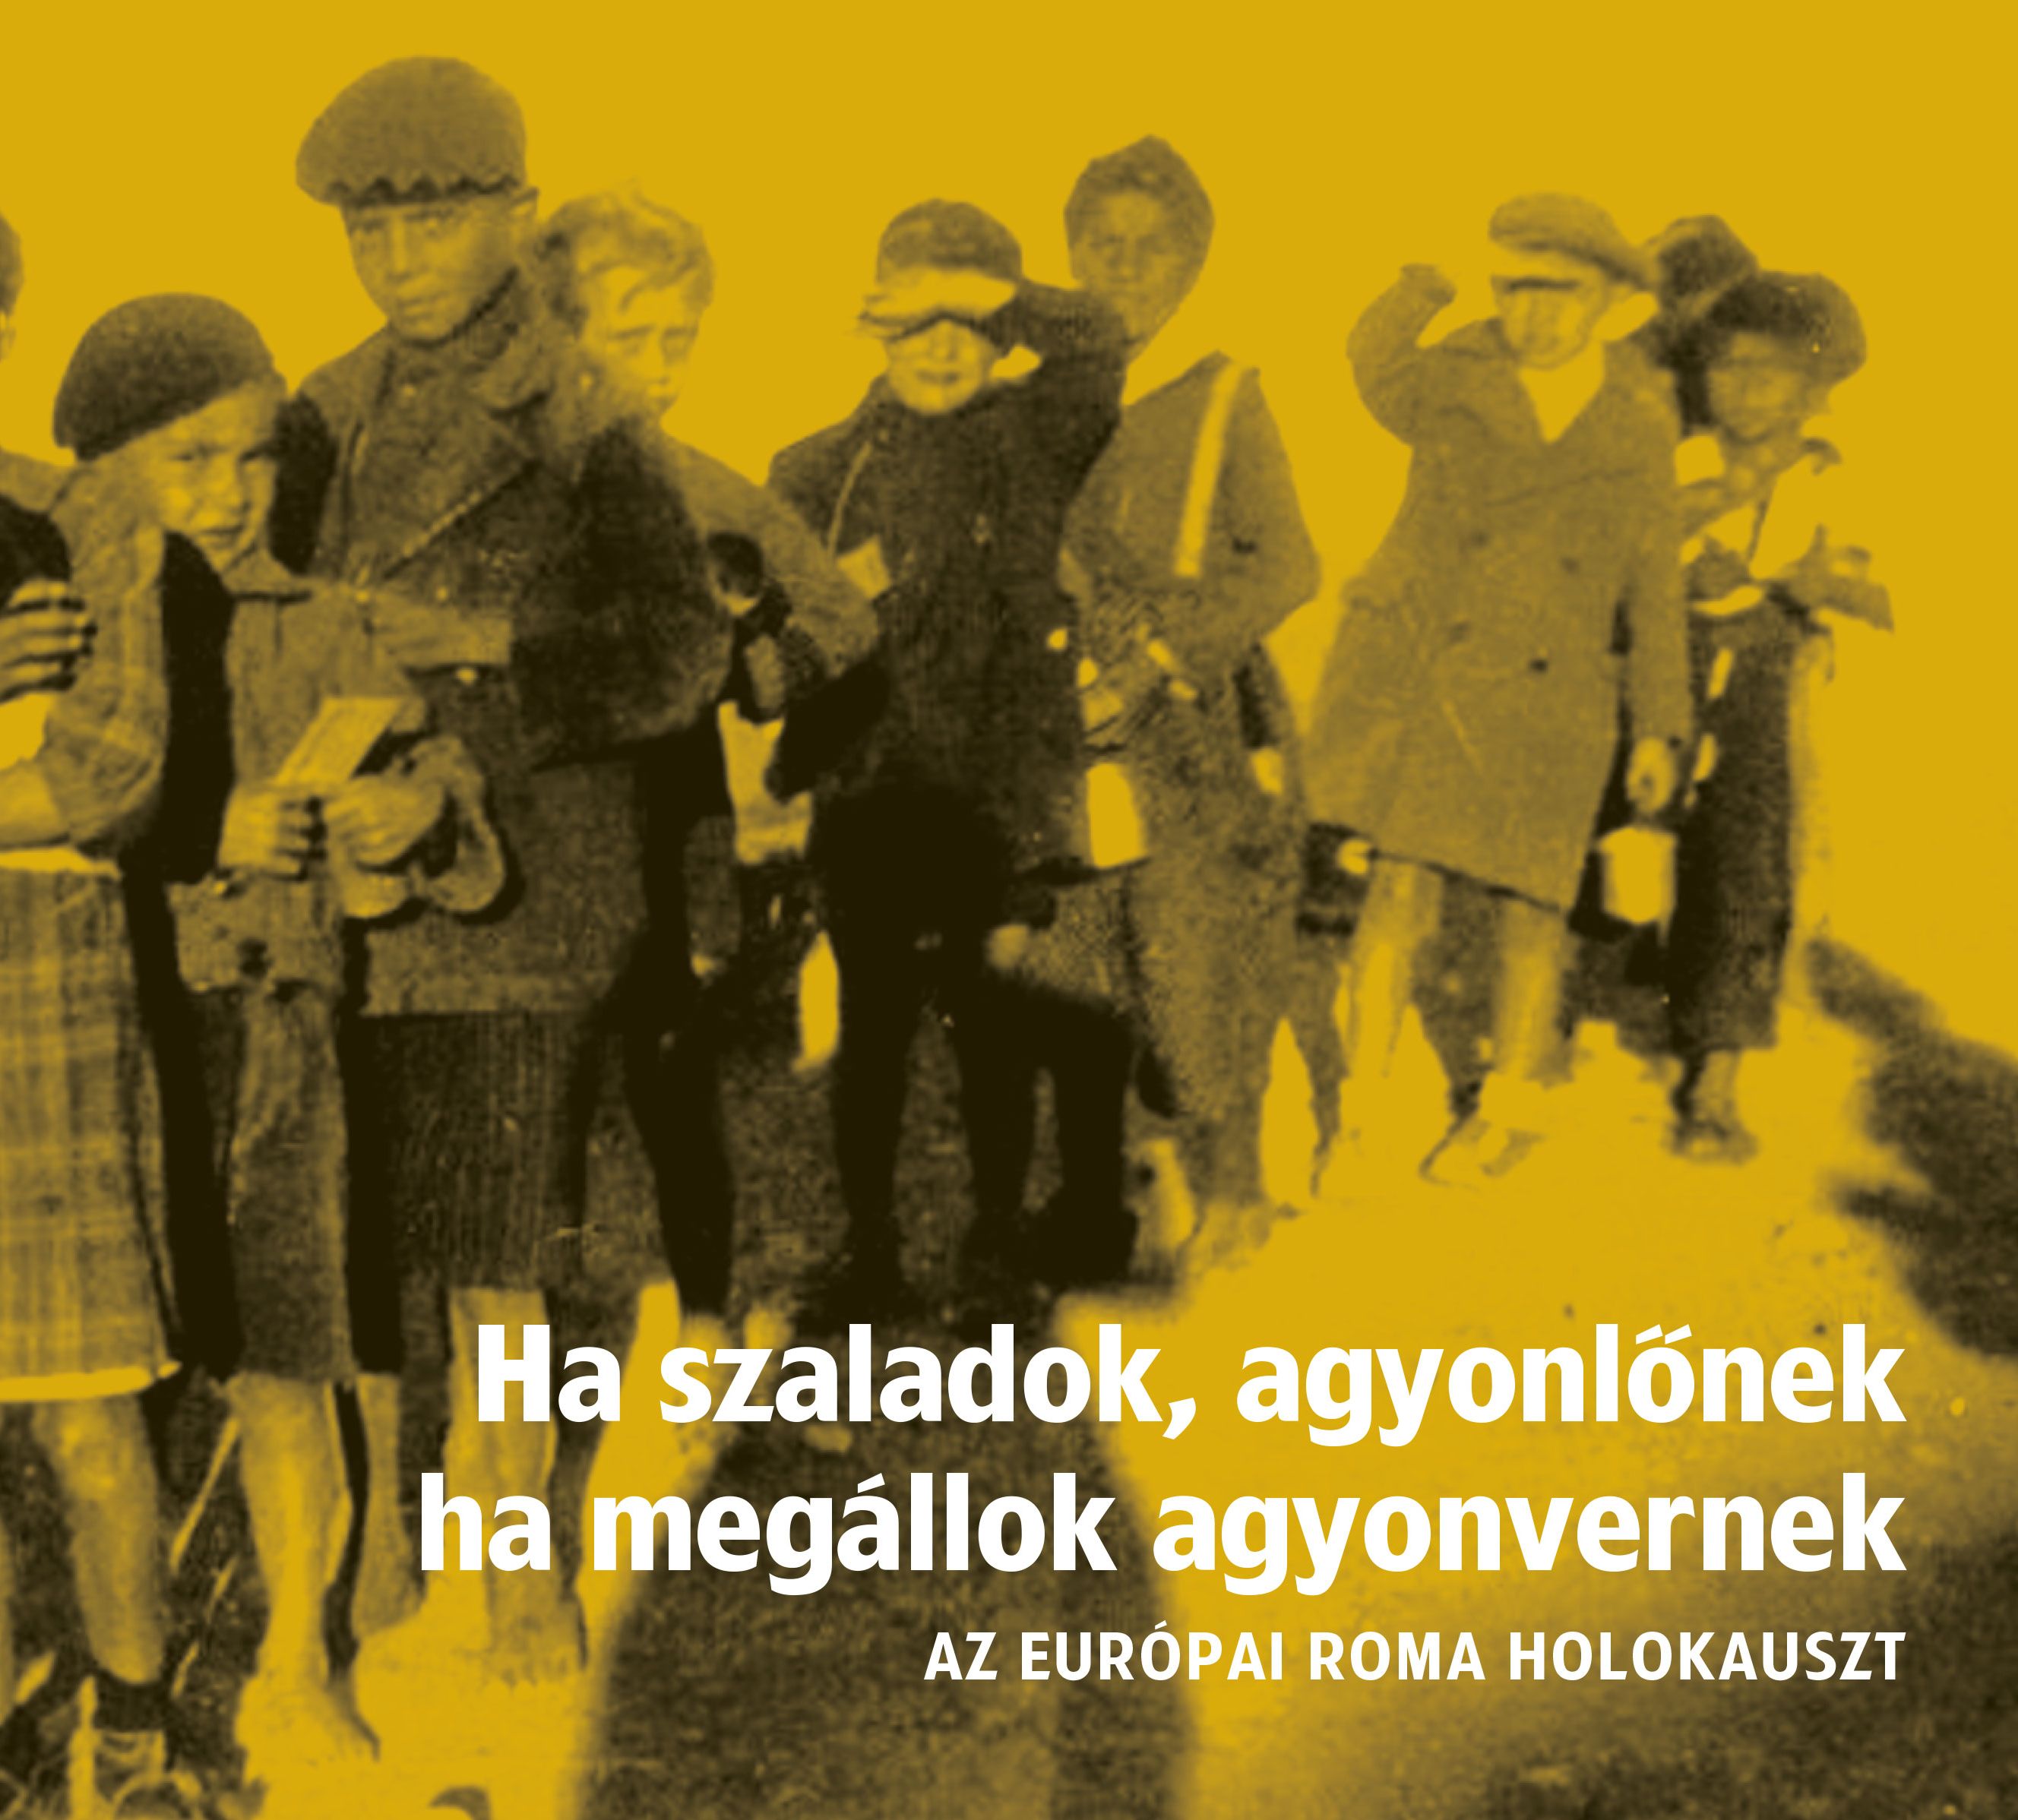 Ha szaladok, agyonlőnek, ha megállok, agyonvernek – az európai roma holokauszt